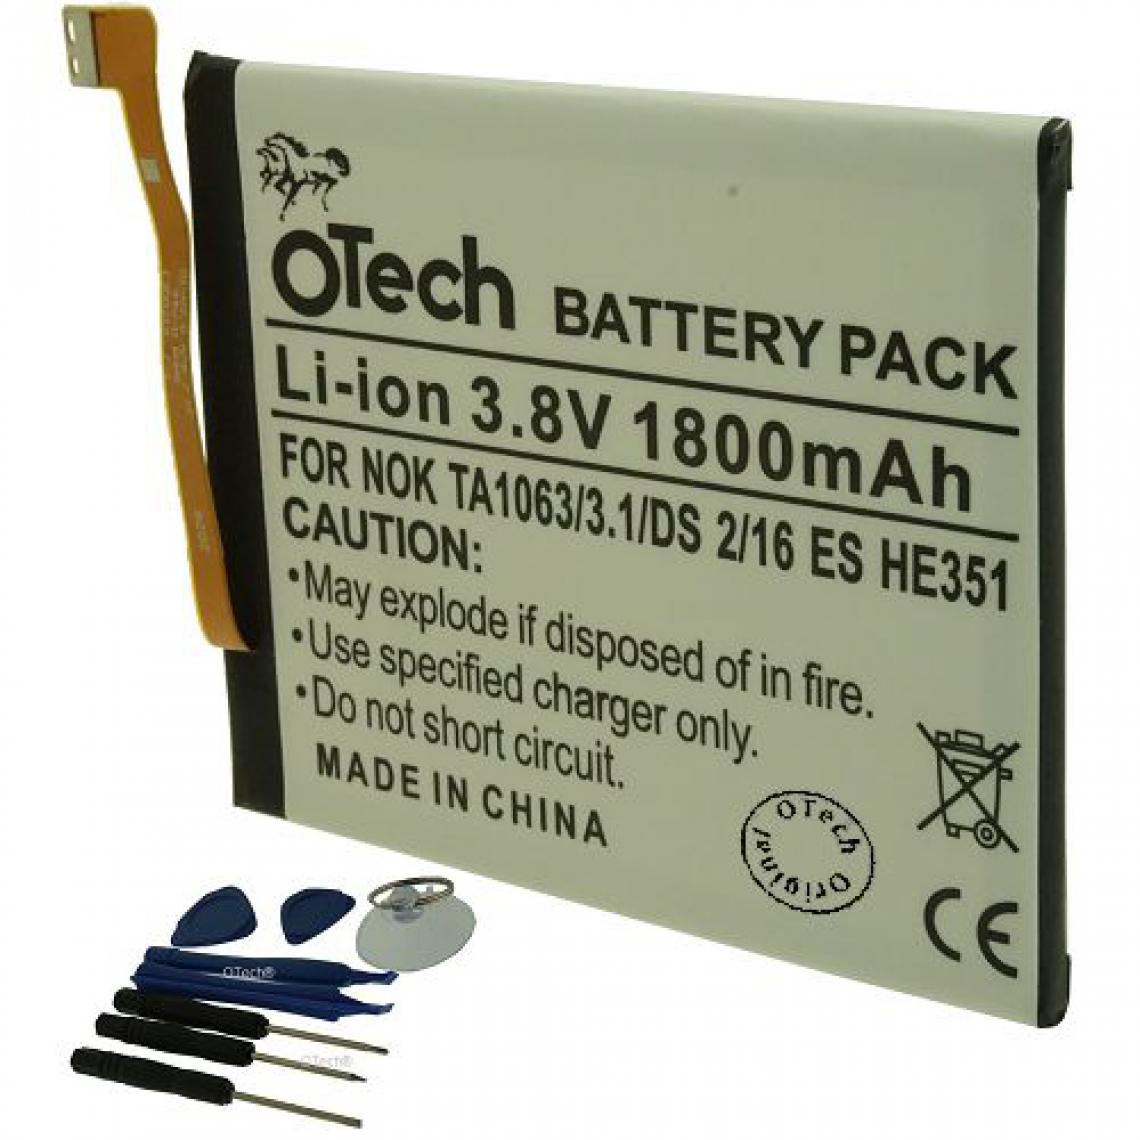 Otech - Batterie compatible pour NOKIA 16 ES HE351 - Batterie téléphone